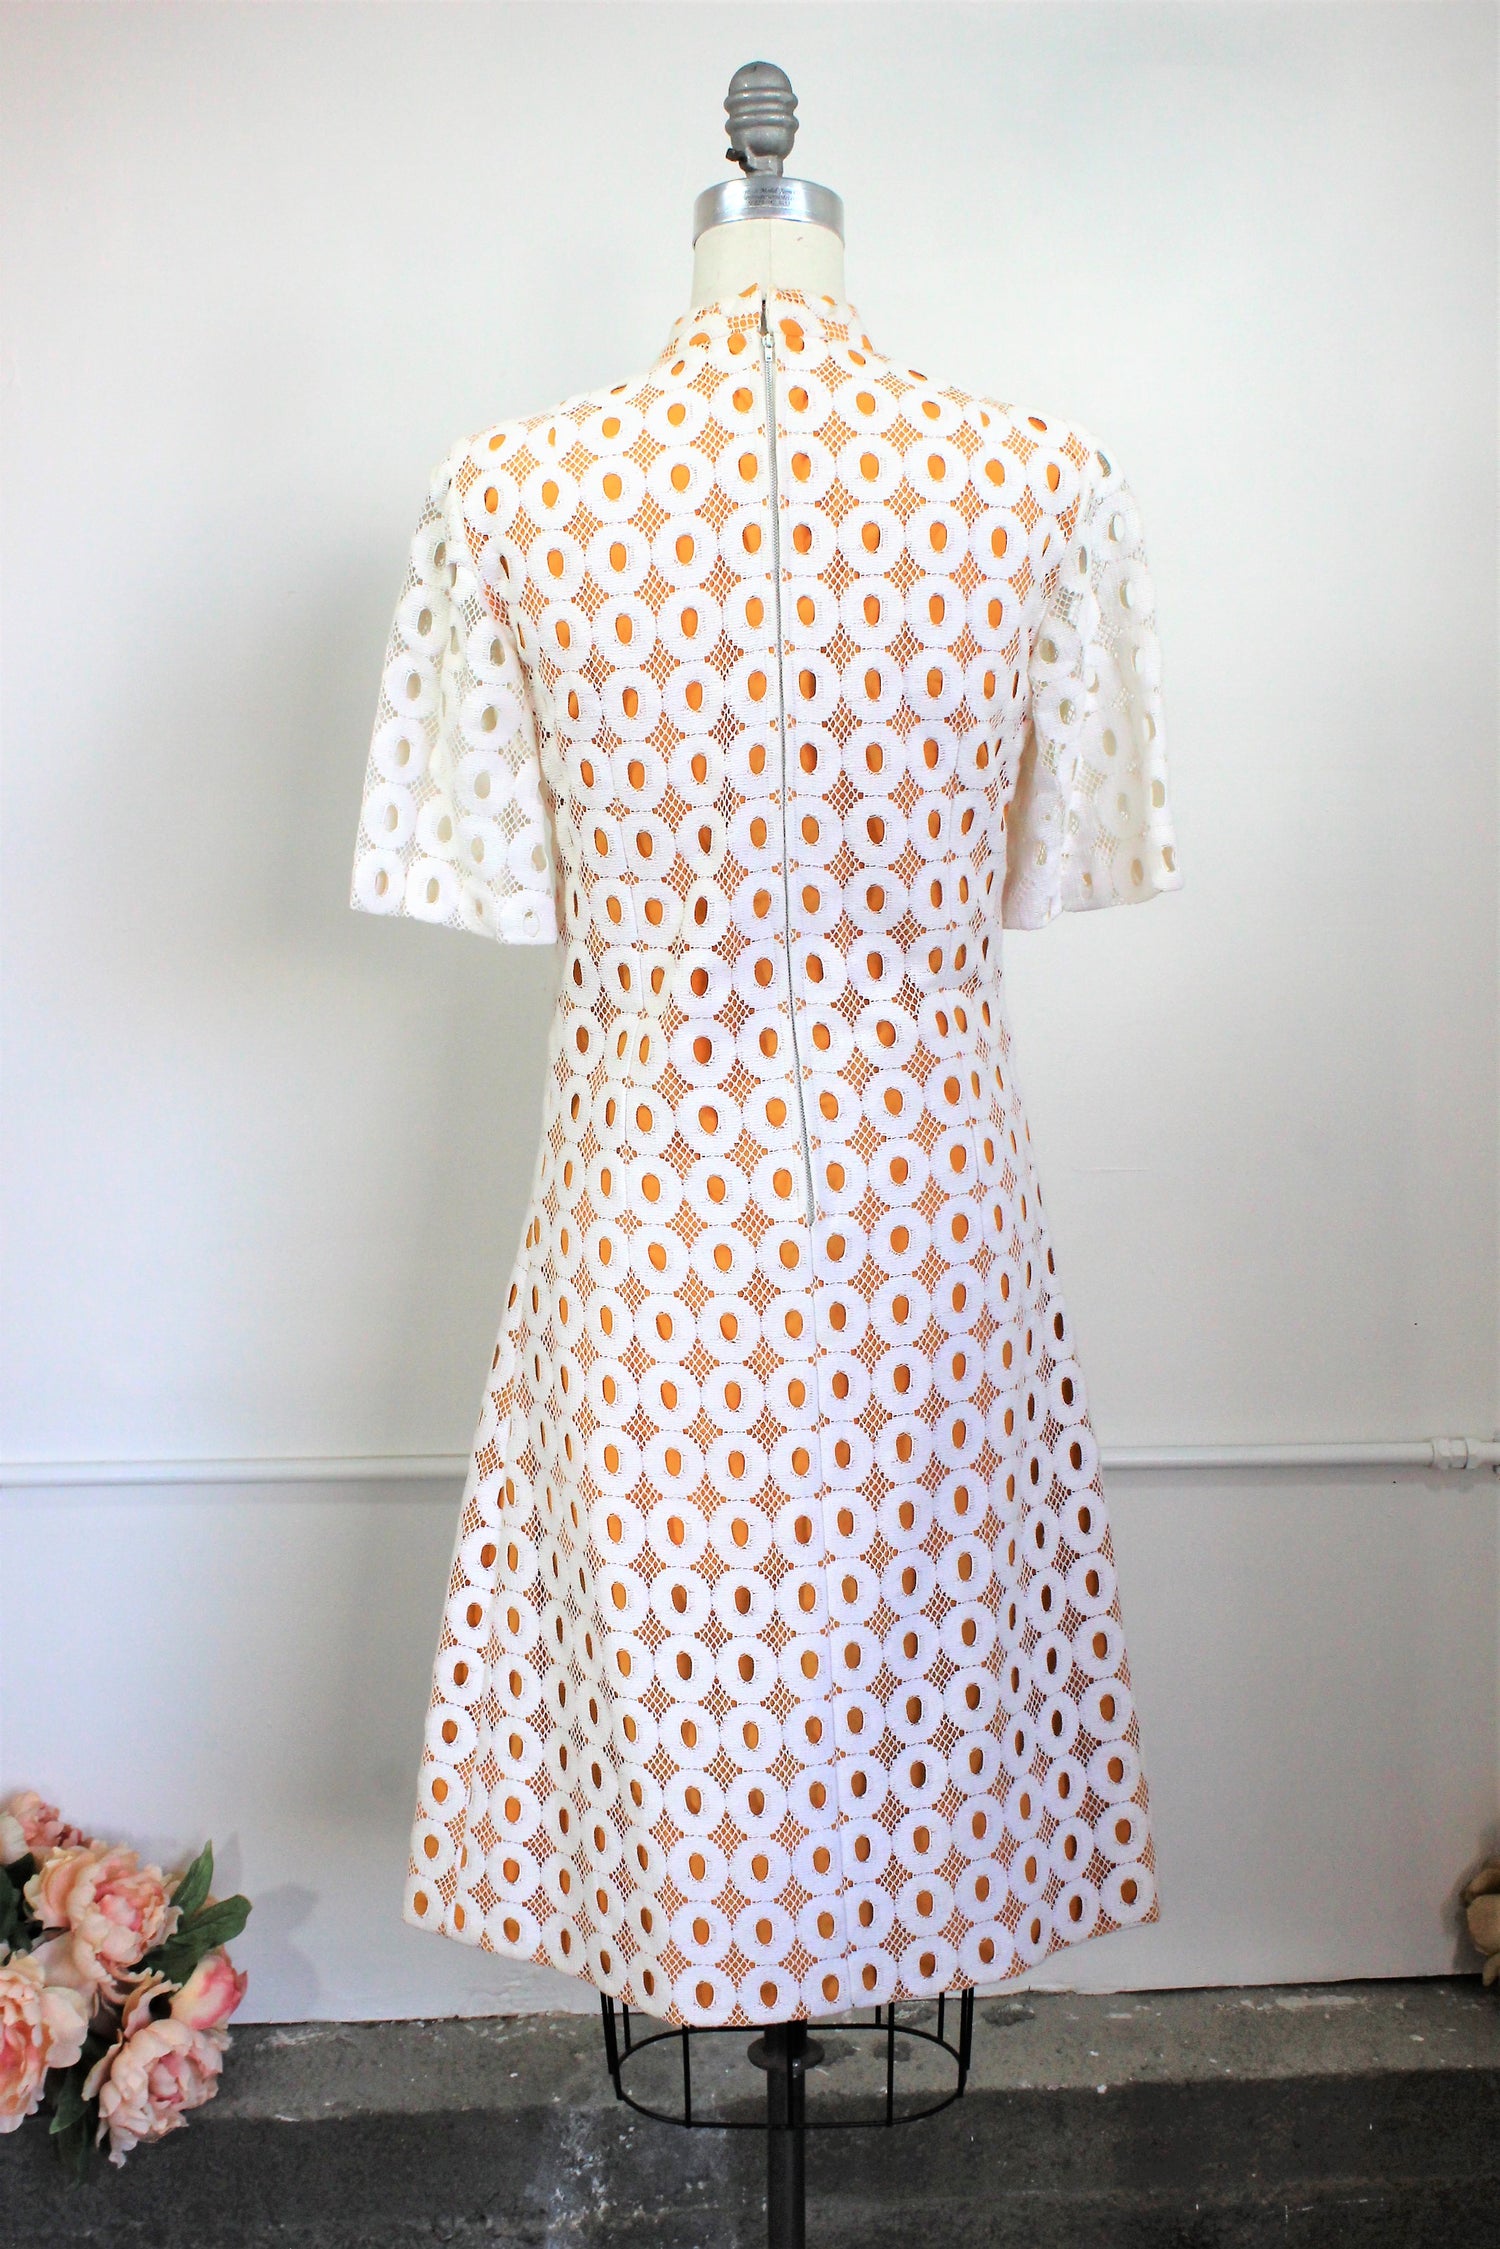 Vintage 1960s White Lace Dress